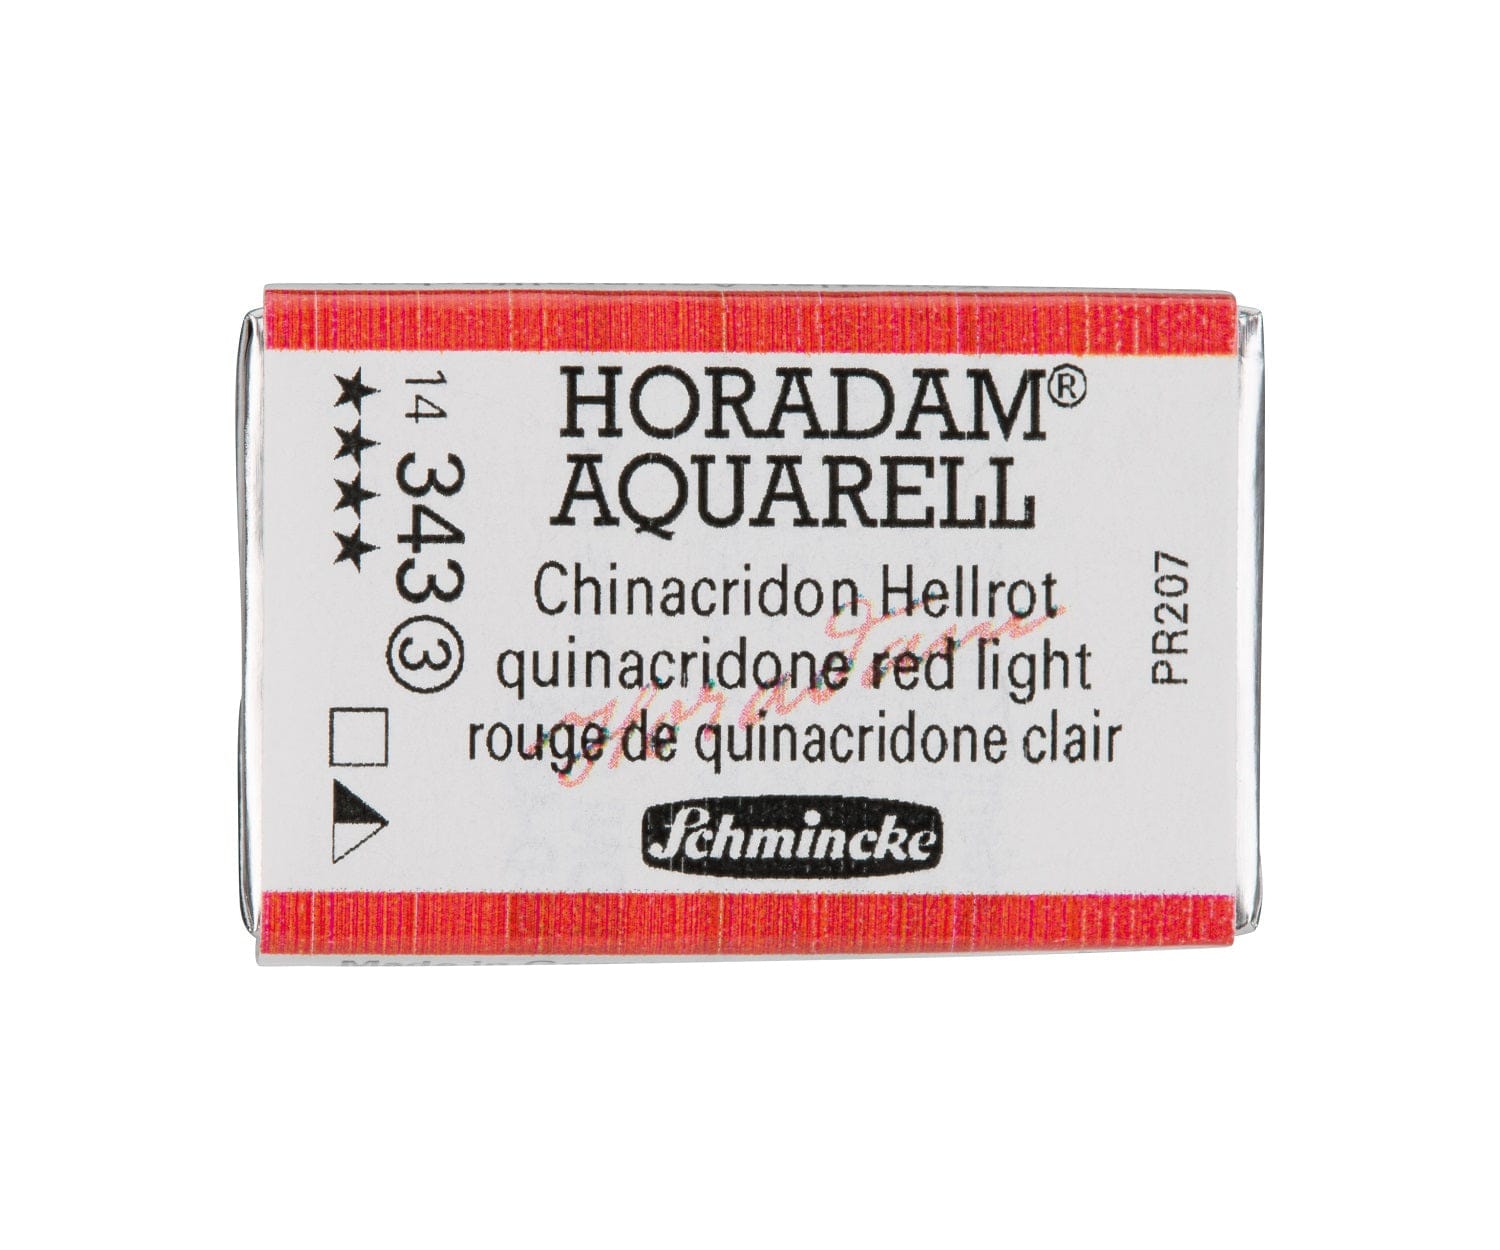 Schmincke Horadam Aquarell pans 1/1 pan Quinacridone Red Light